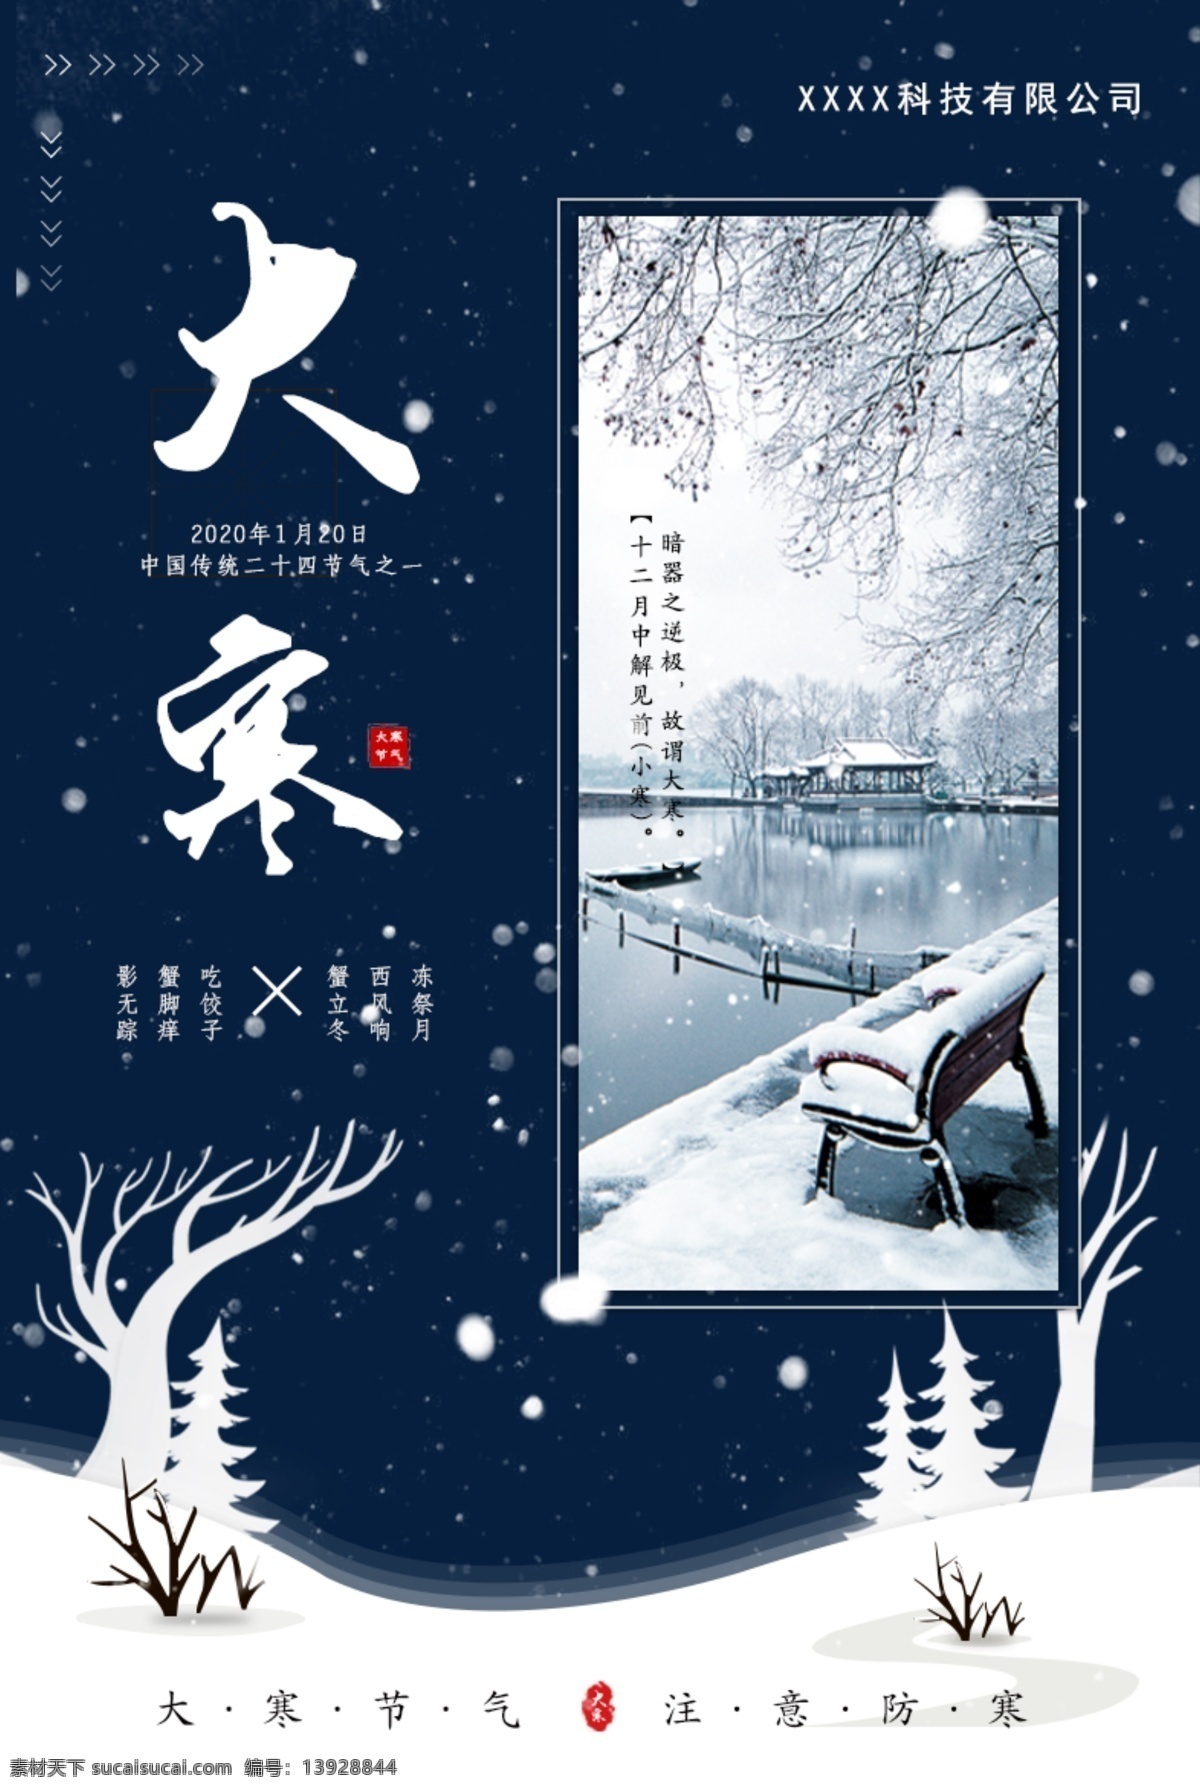 二十四节气 大雪雪景 大寒节气 企业海报 宣传海报 文化艺术 传统文化